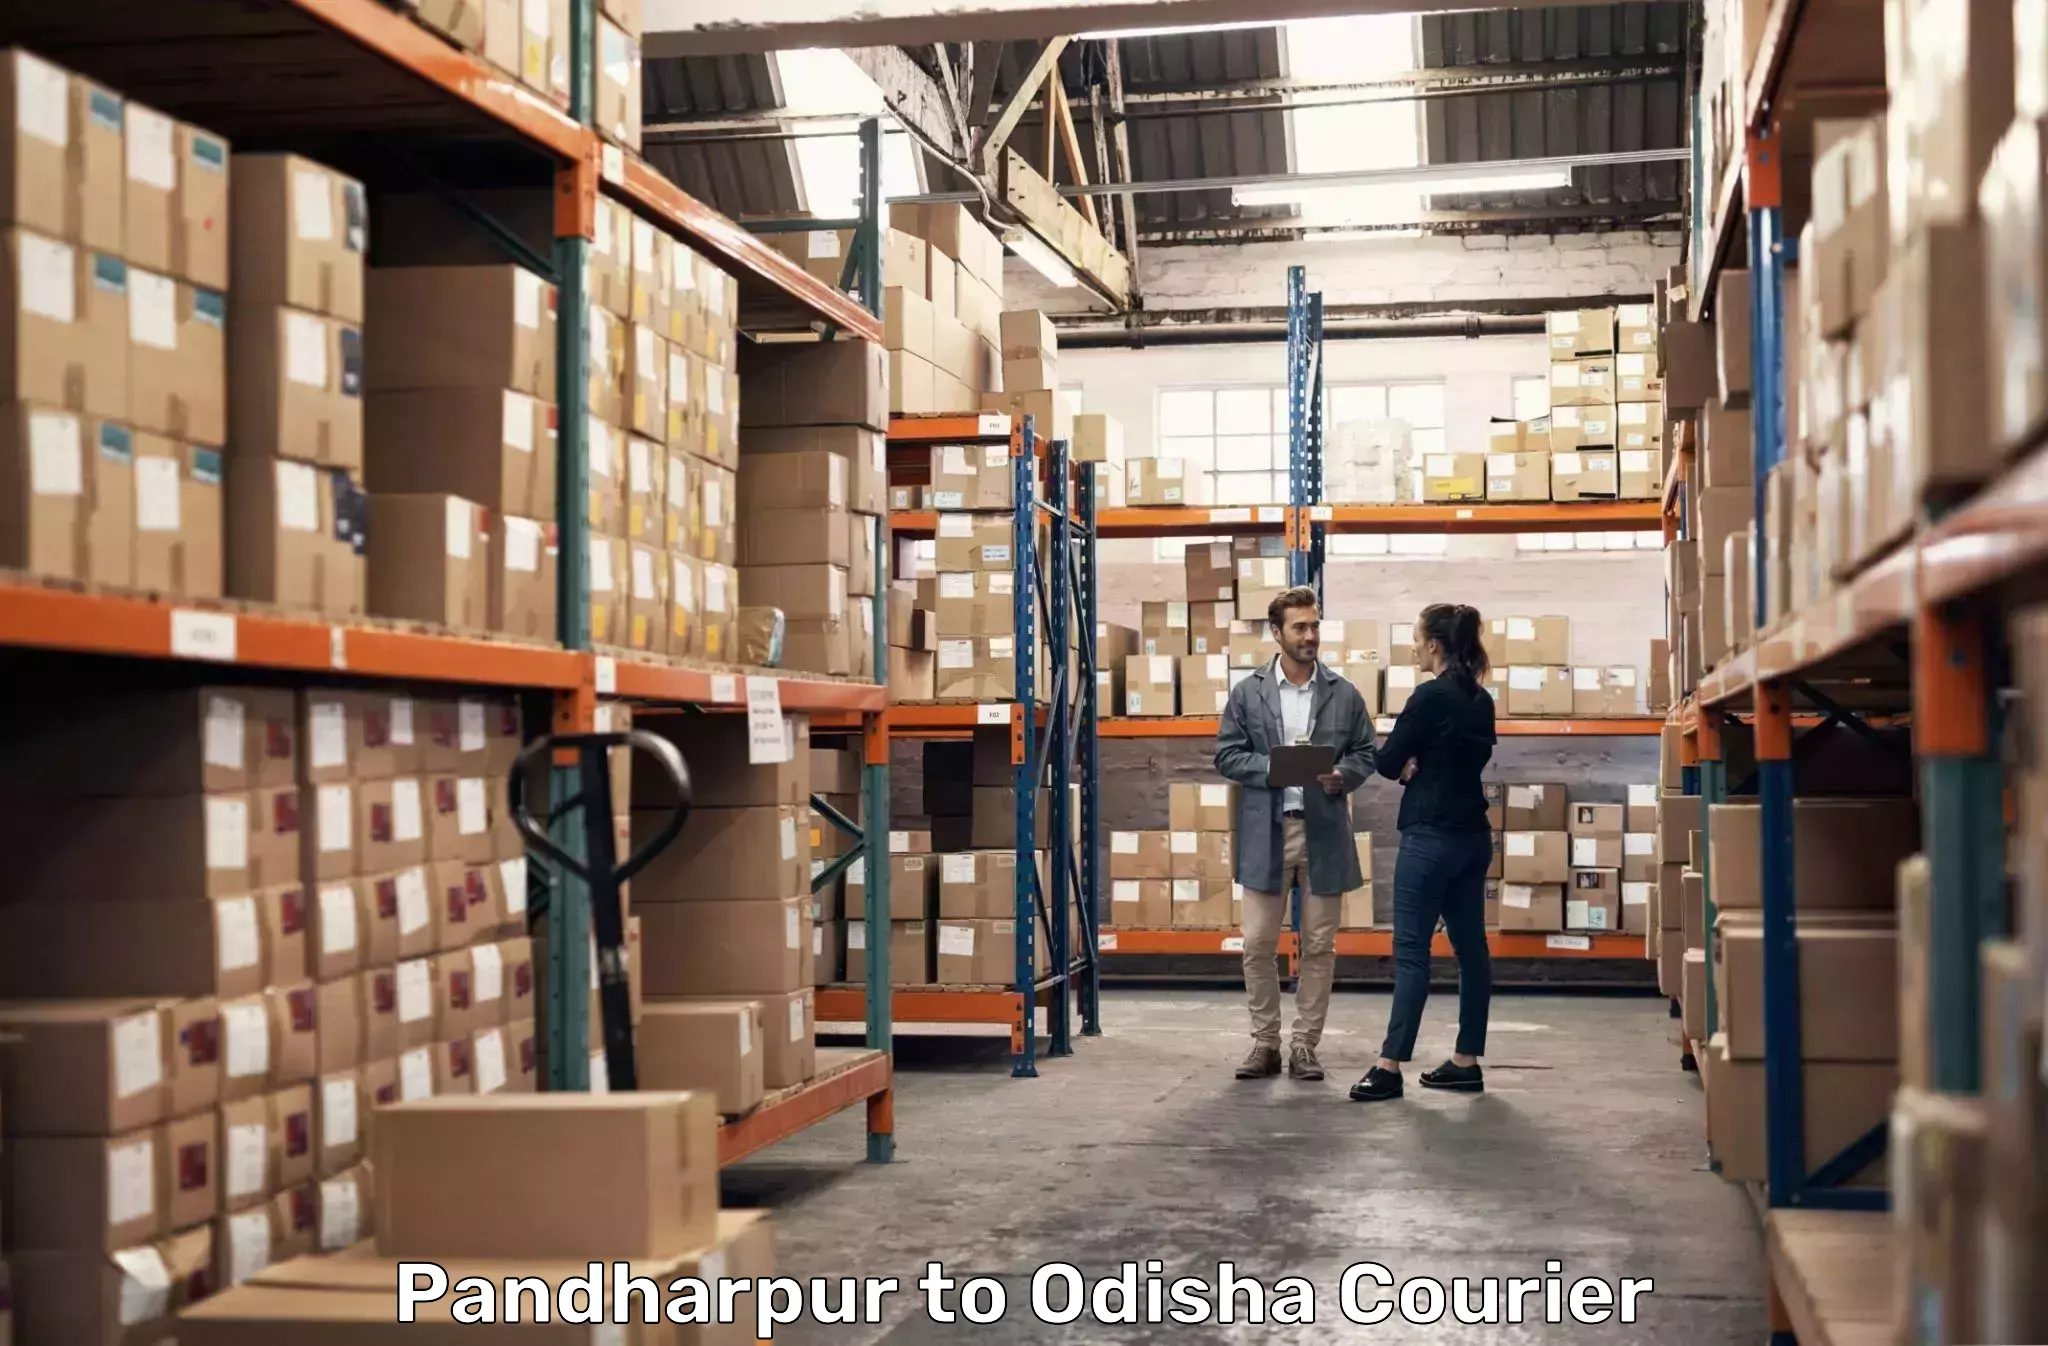 Efficient parcel service Pandharpur to Talcher